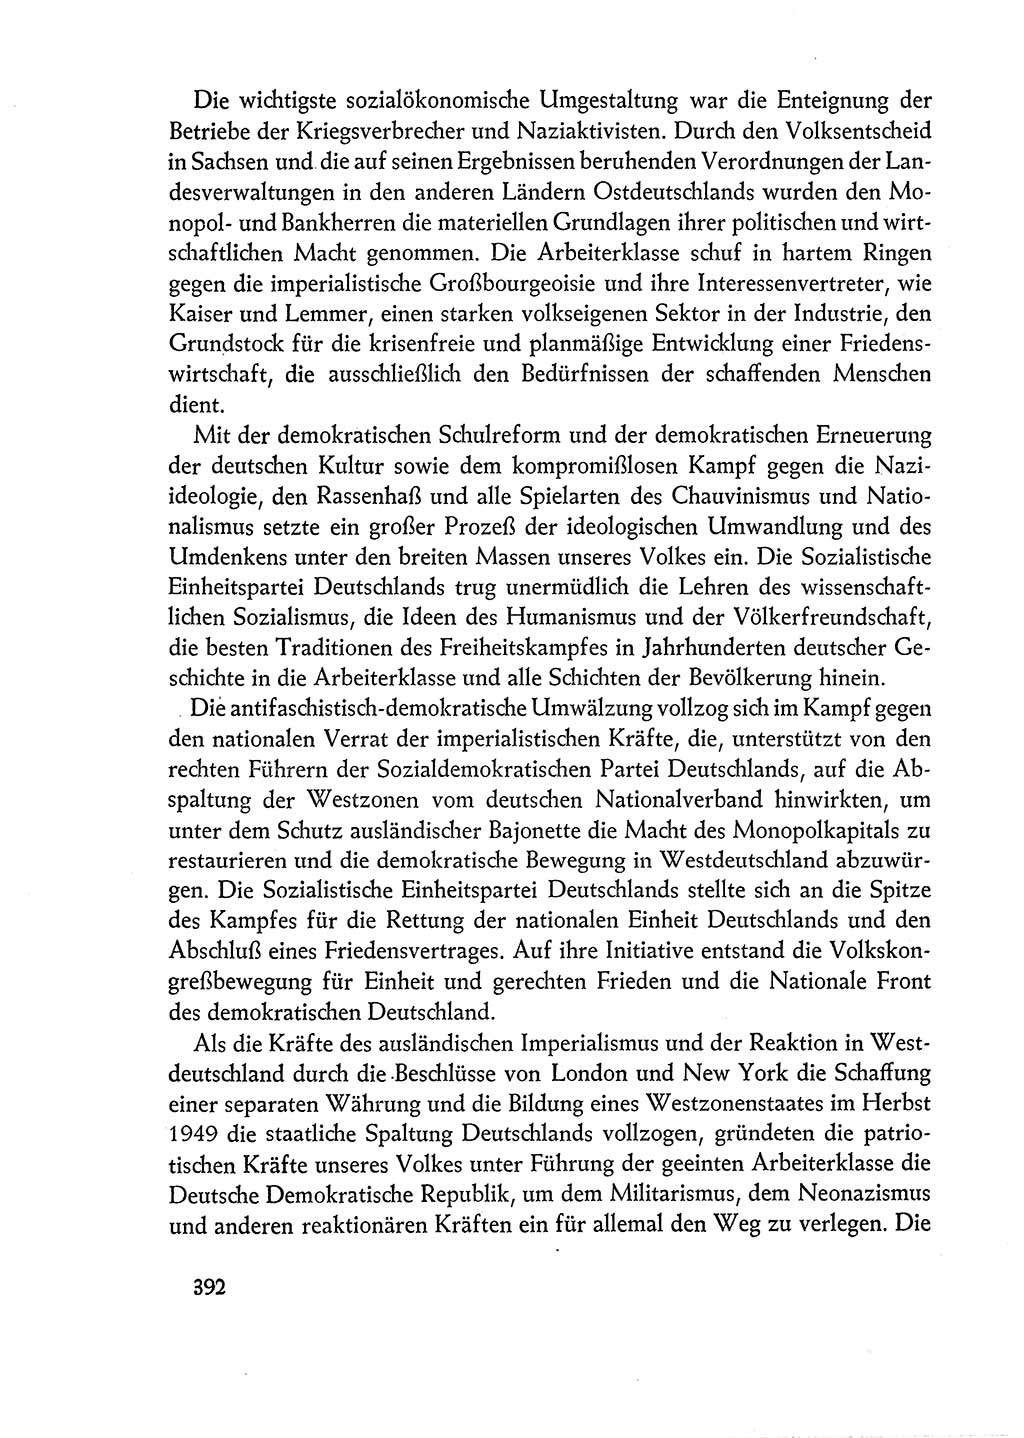 Dokumente der Sozialistischen Einheitspartei Deutschlands (SED) [Deutsche Demokratische Republik (DDR)] 1960-1961, Seite 392 (Dok. SED DDR 1960-1961, S. 392)